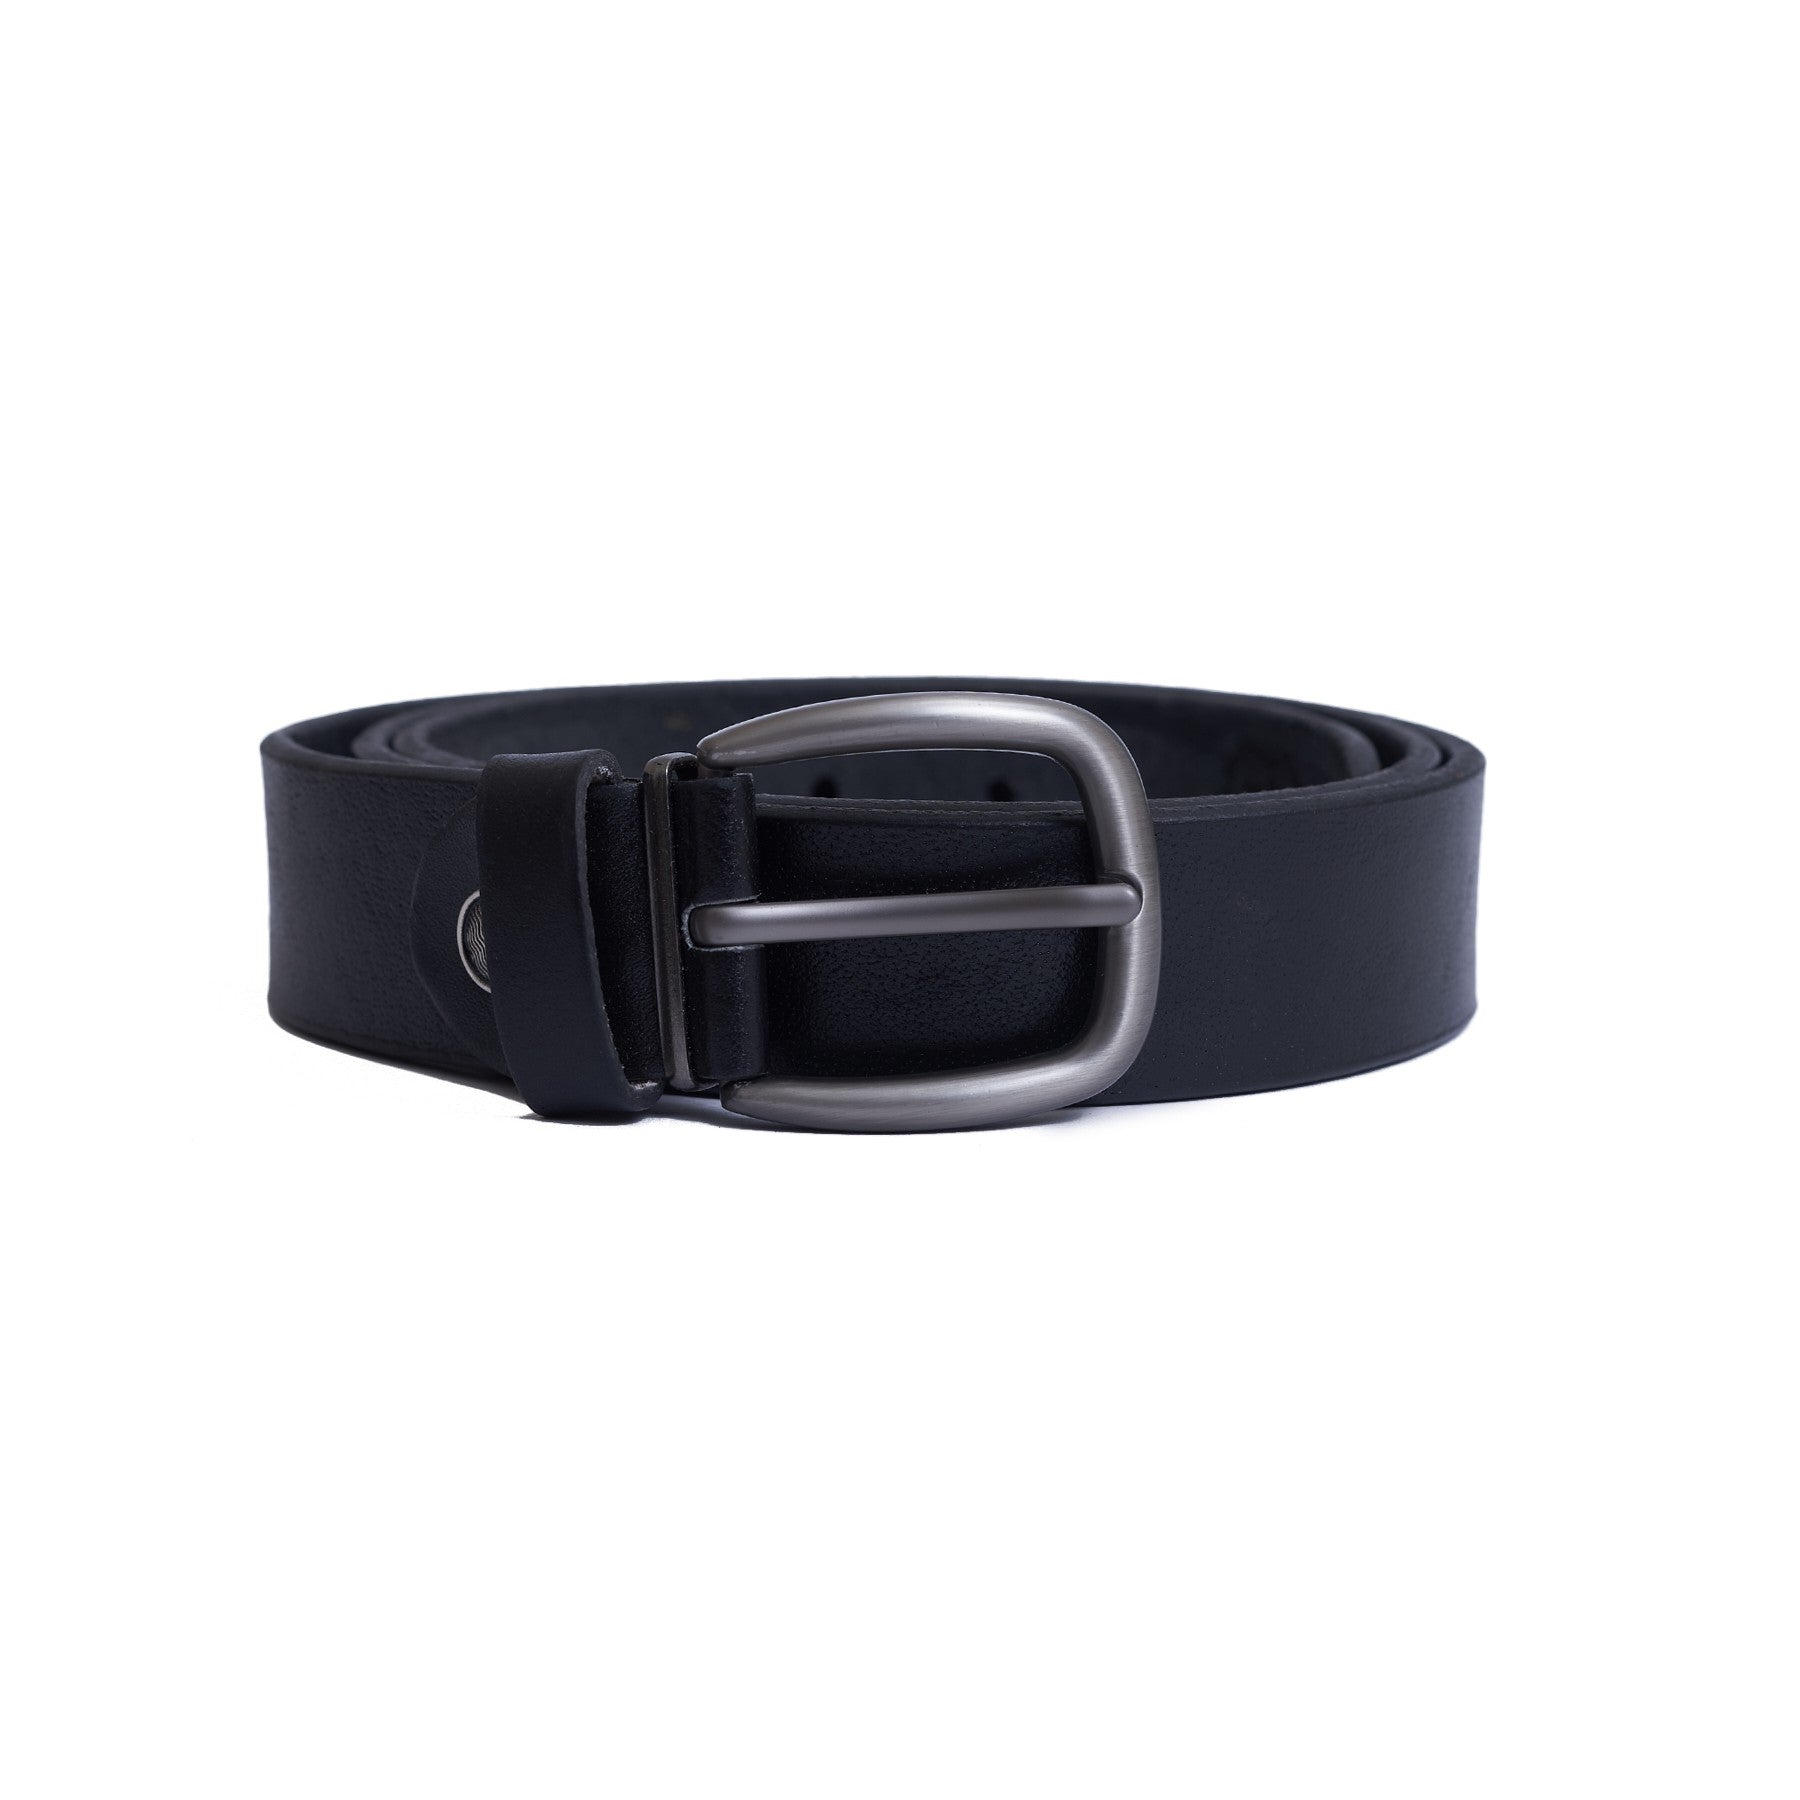 3 CM Genuine leather Belt - lux - Black Color Model B5101